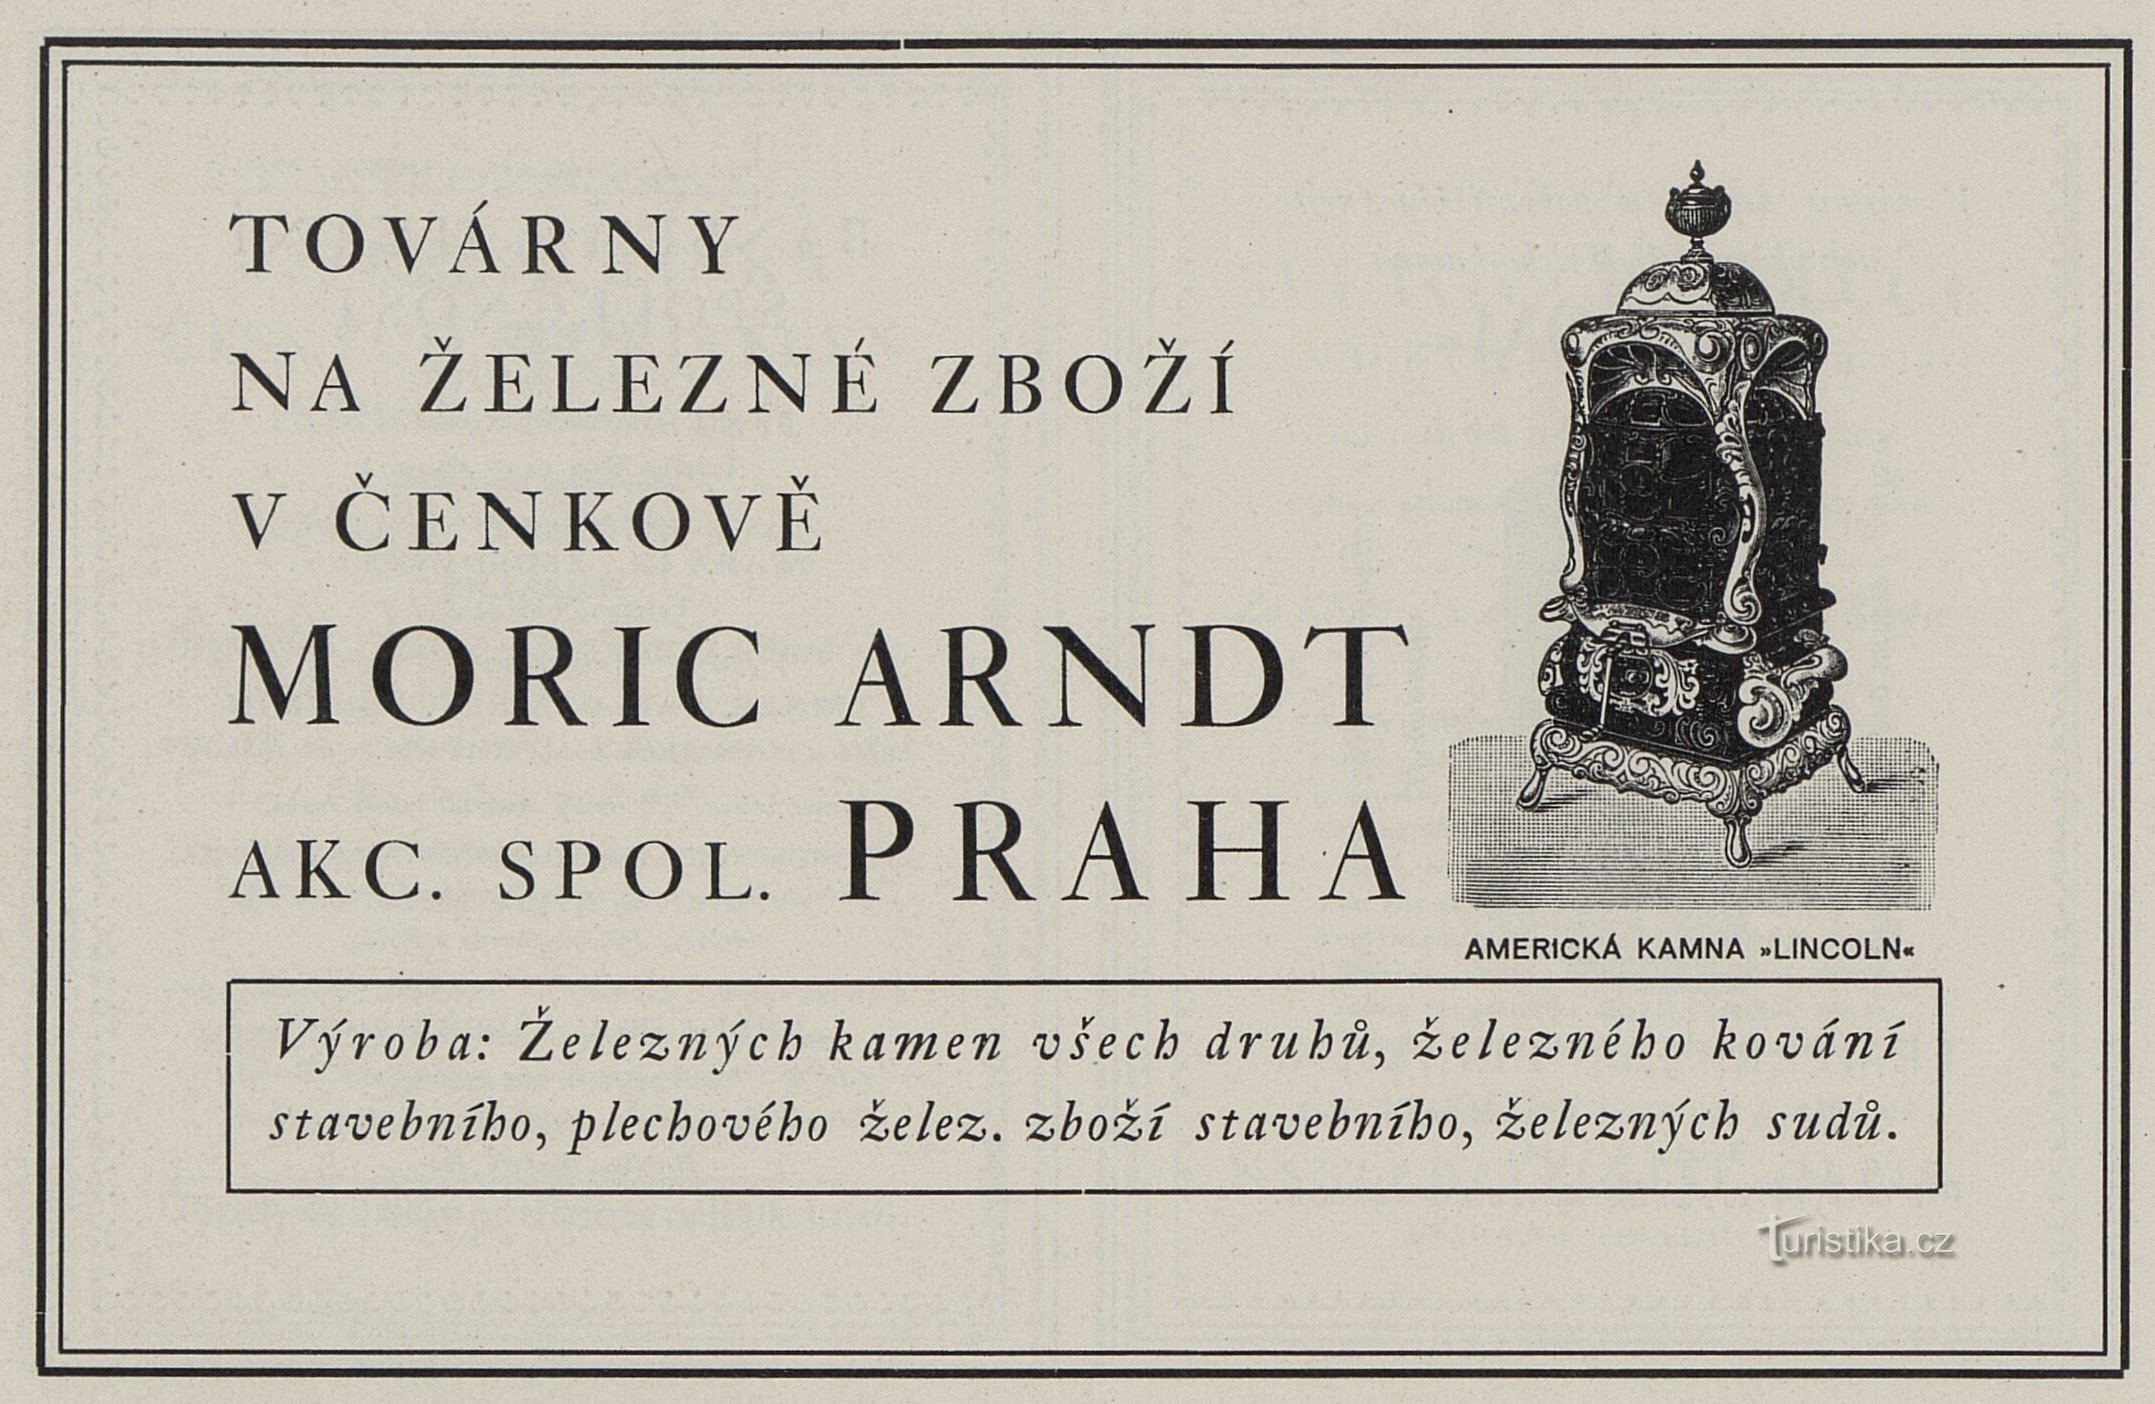 Une publicité de 1925 pour Moric Arndt